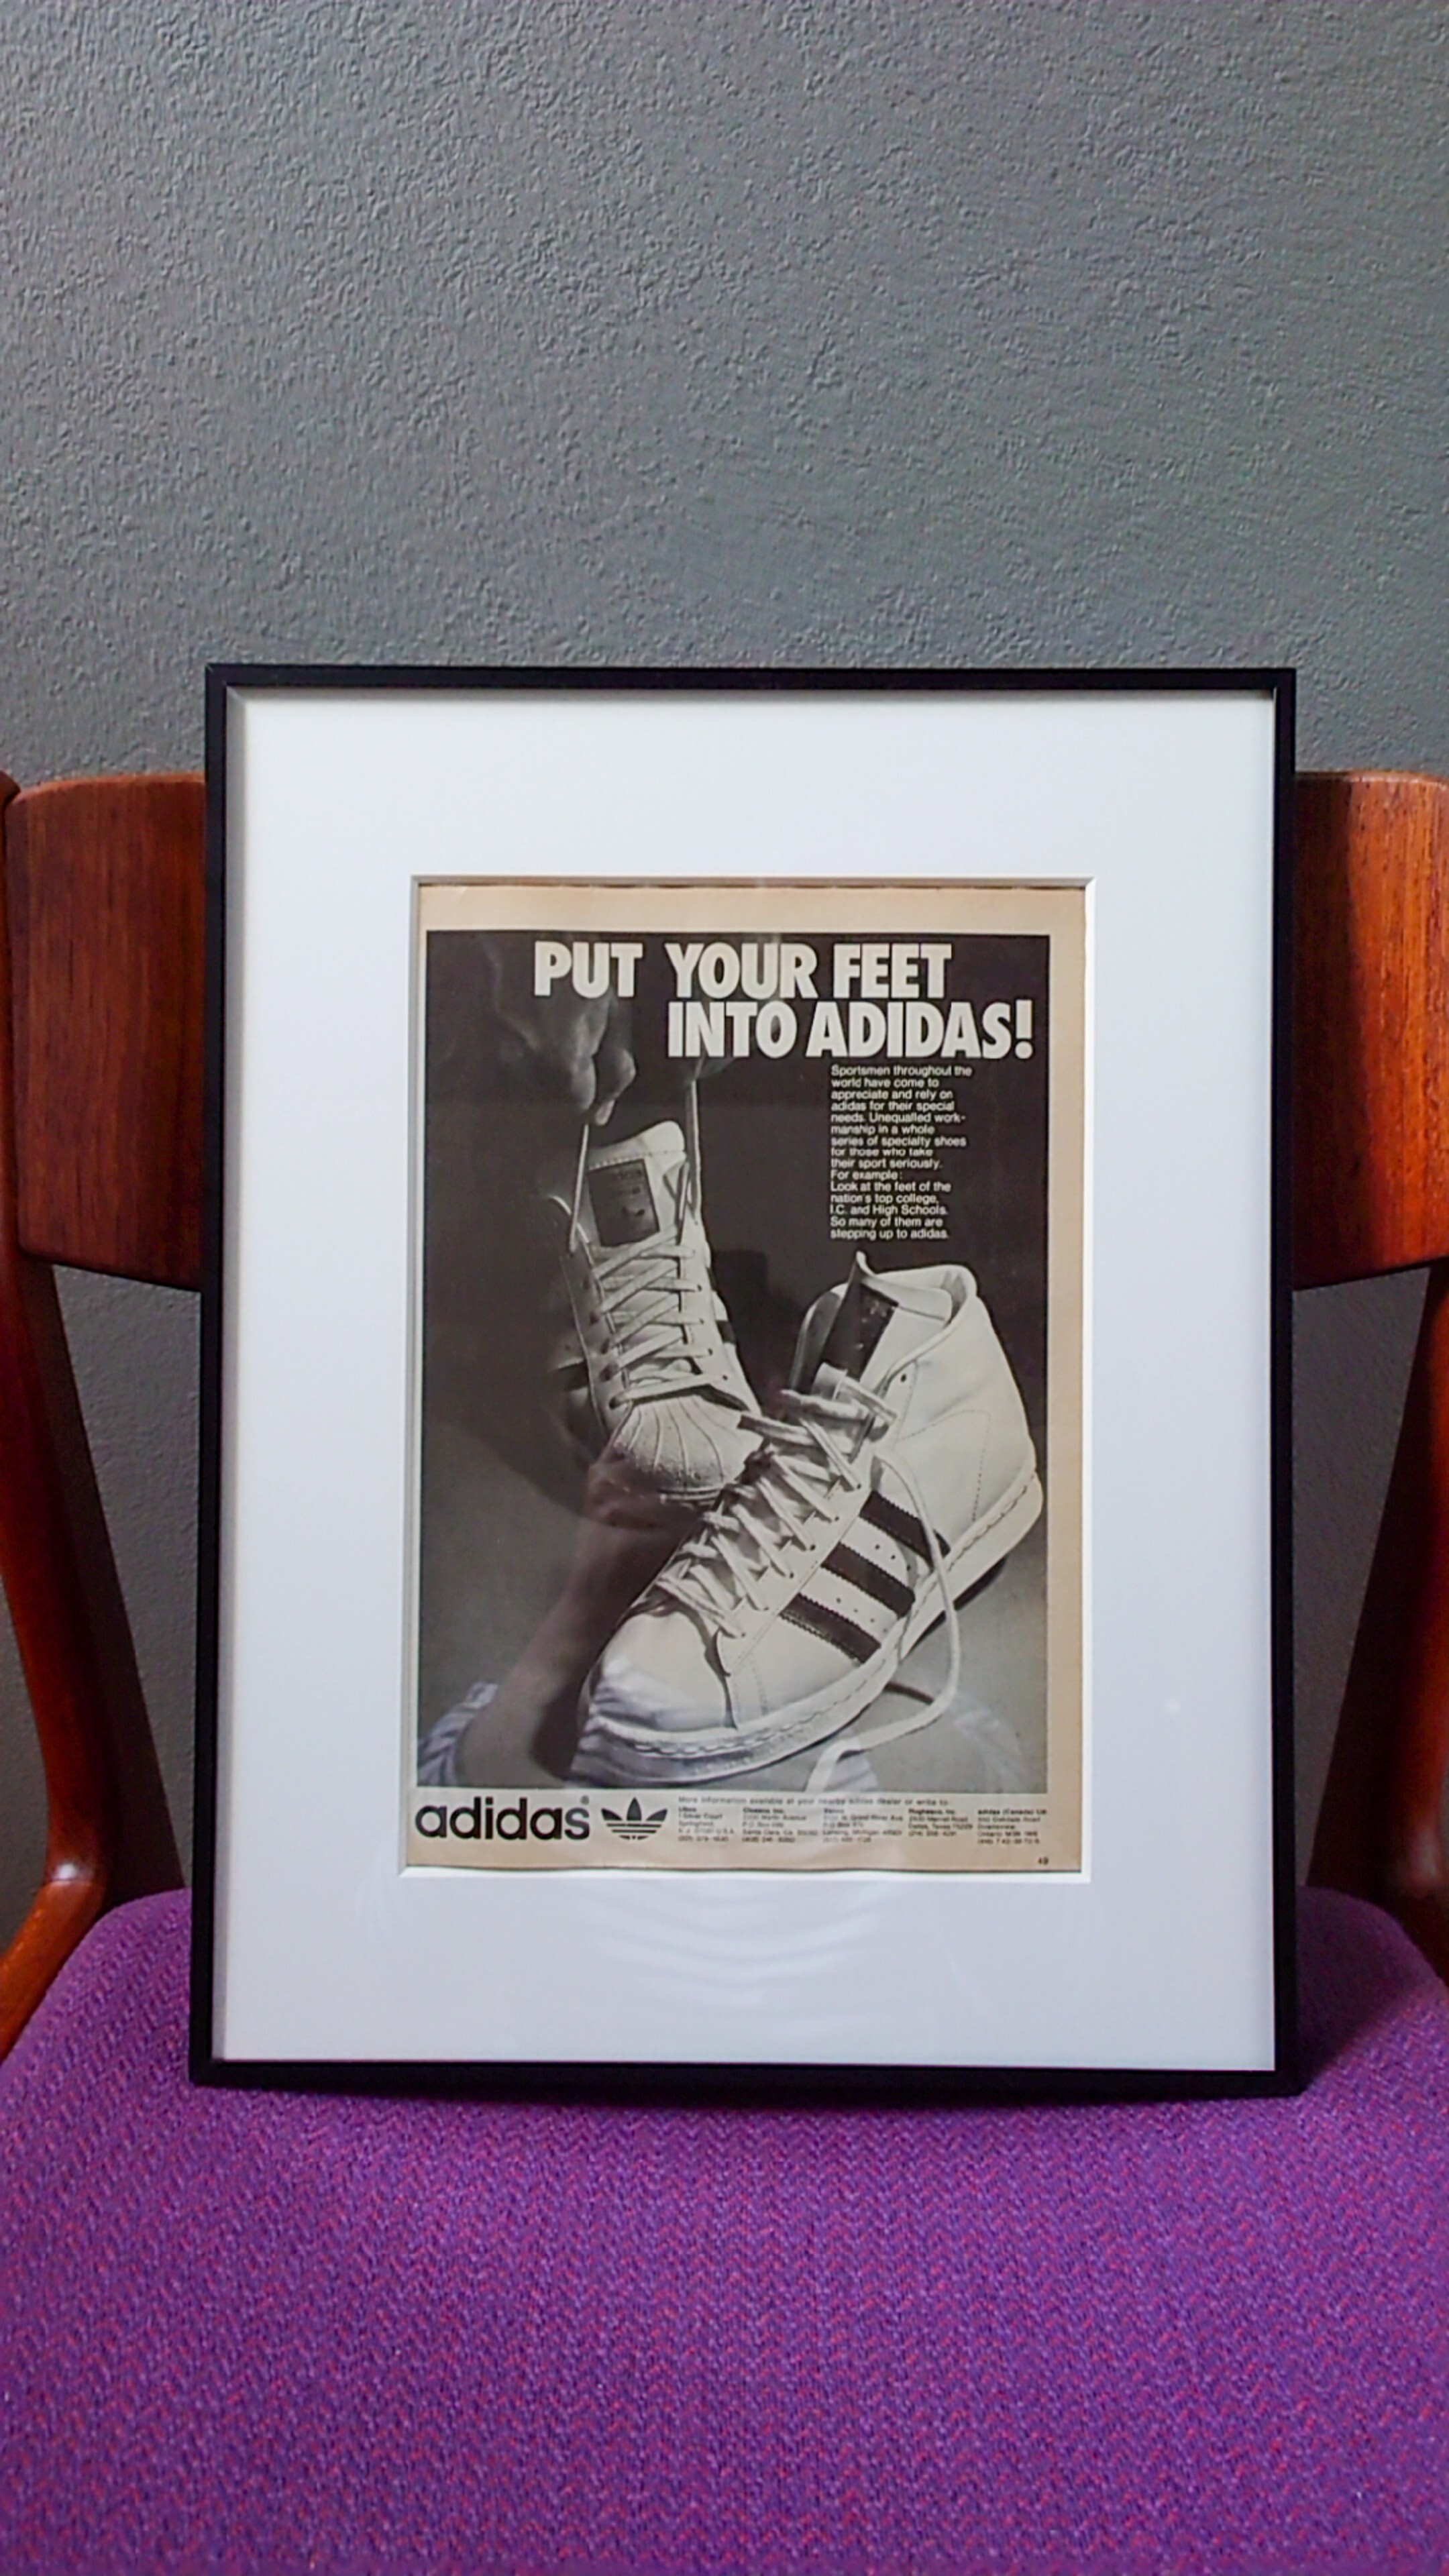 1975 Adidas アディダス スーパースター スニーカー アドバタイジング ポスター Ad 広告 アート ヴィンテージ 07 Vintage セブン ヴィンテージ ヴィンテージ セレクト オンライン ストア